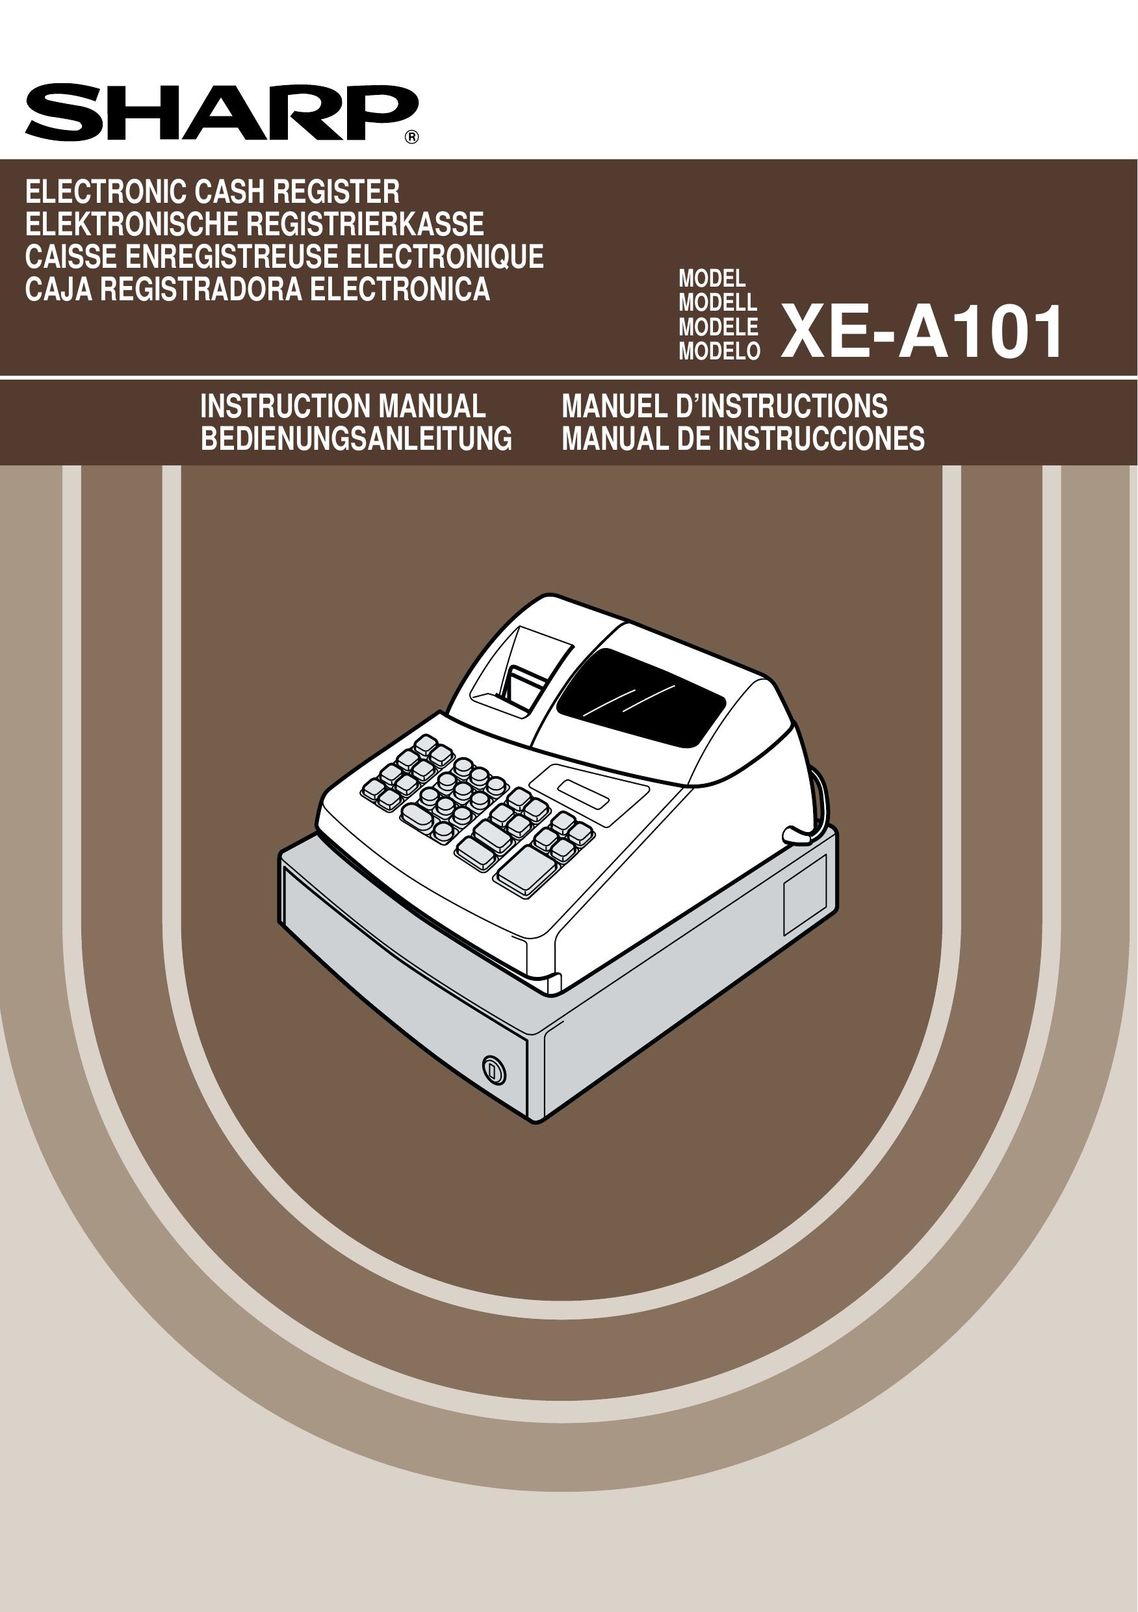 Weider XE-A101 Cash Register User Manual